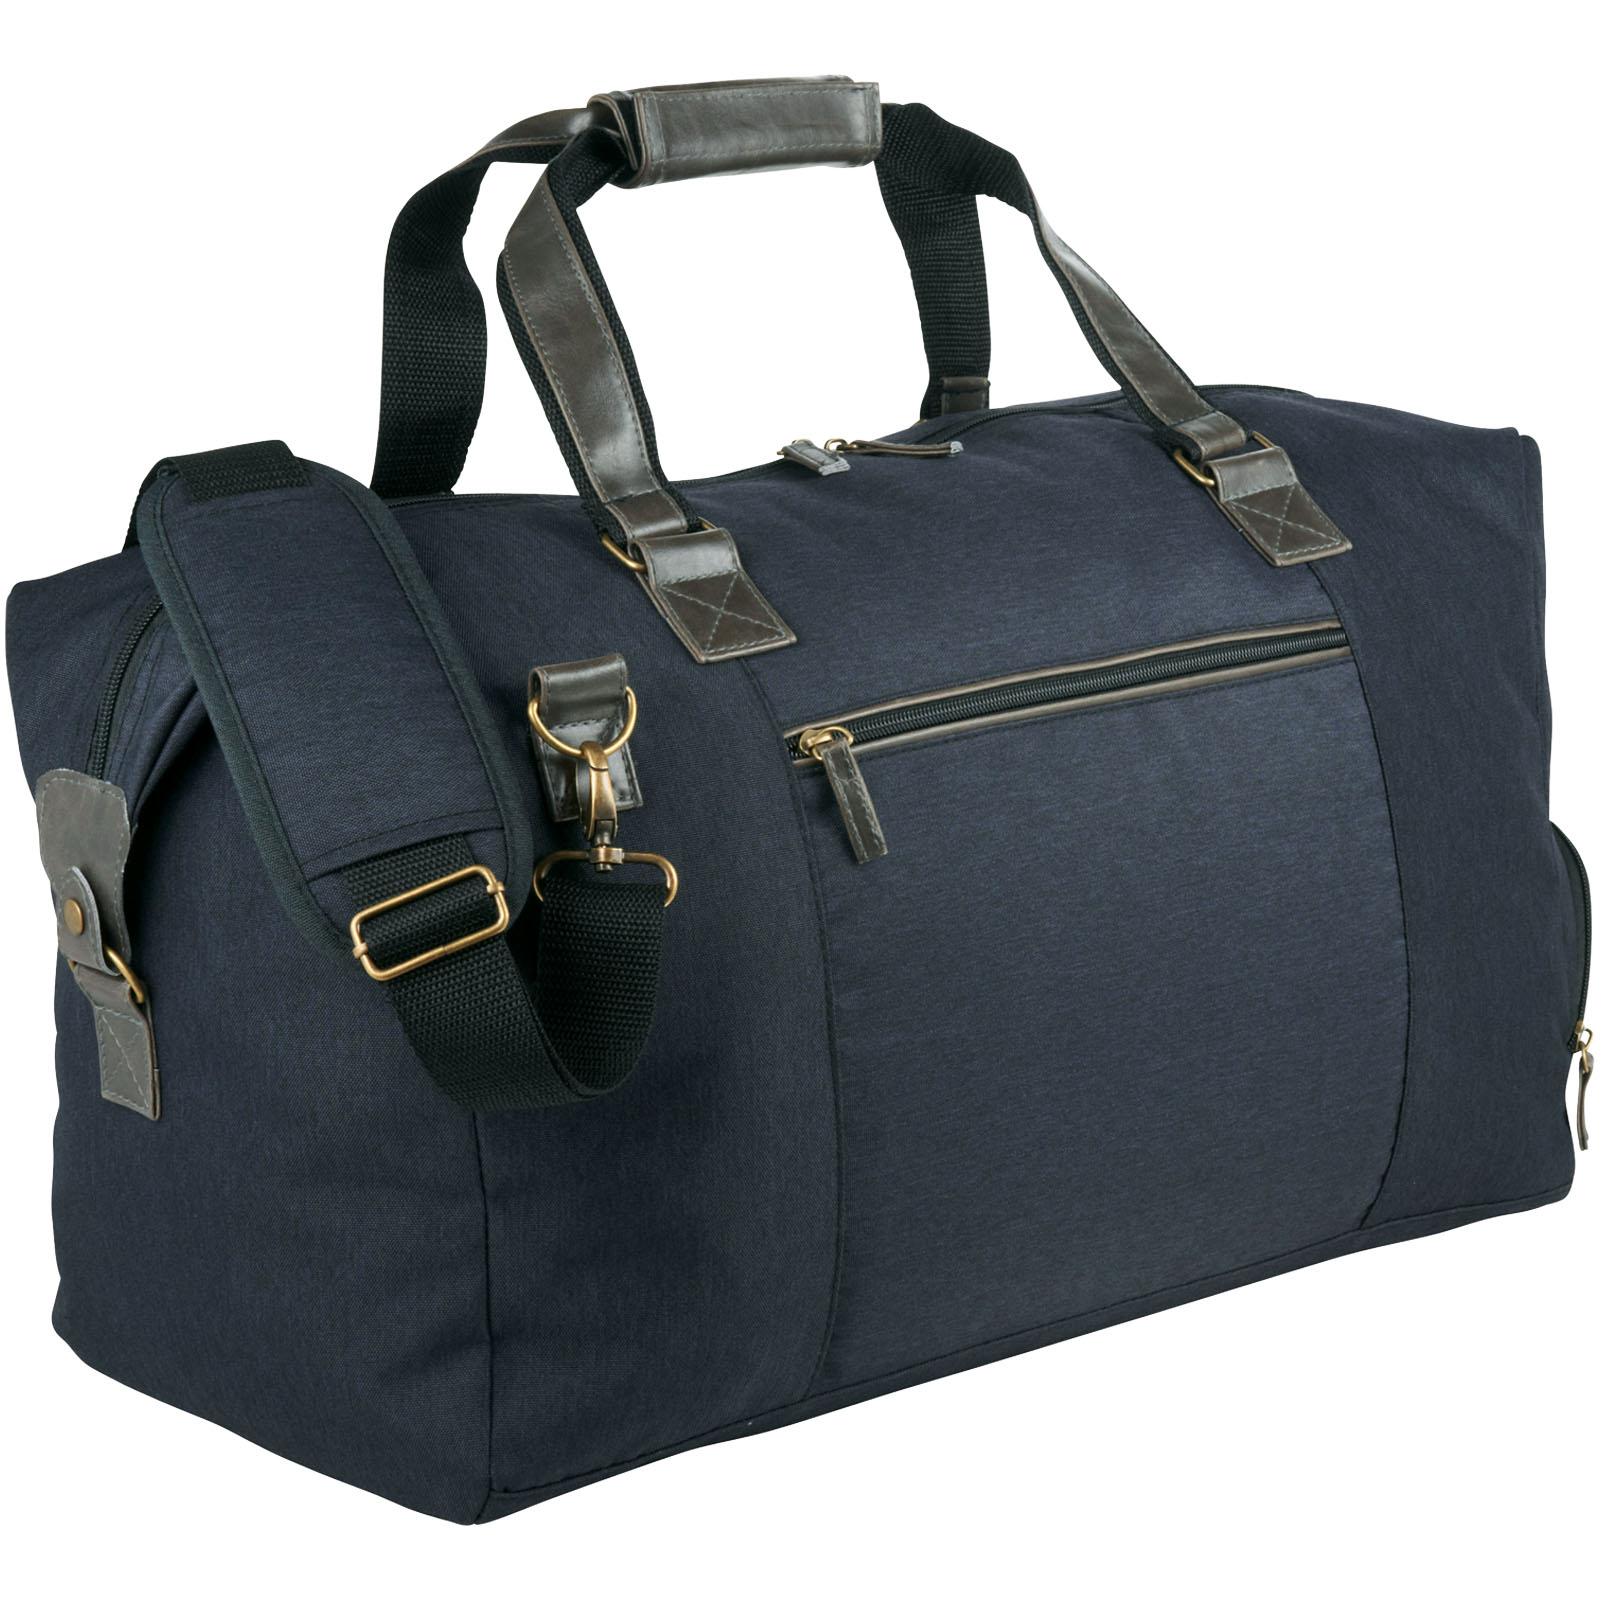 Bags - Capitol duffel bag 35L